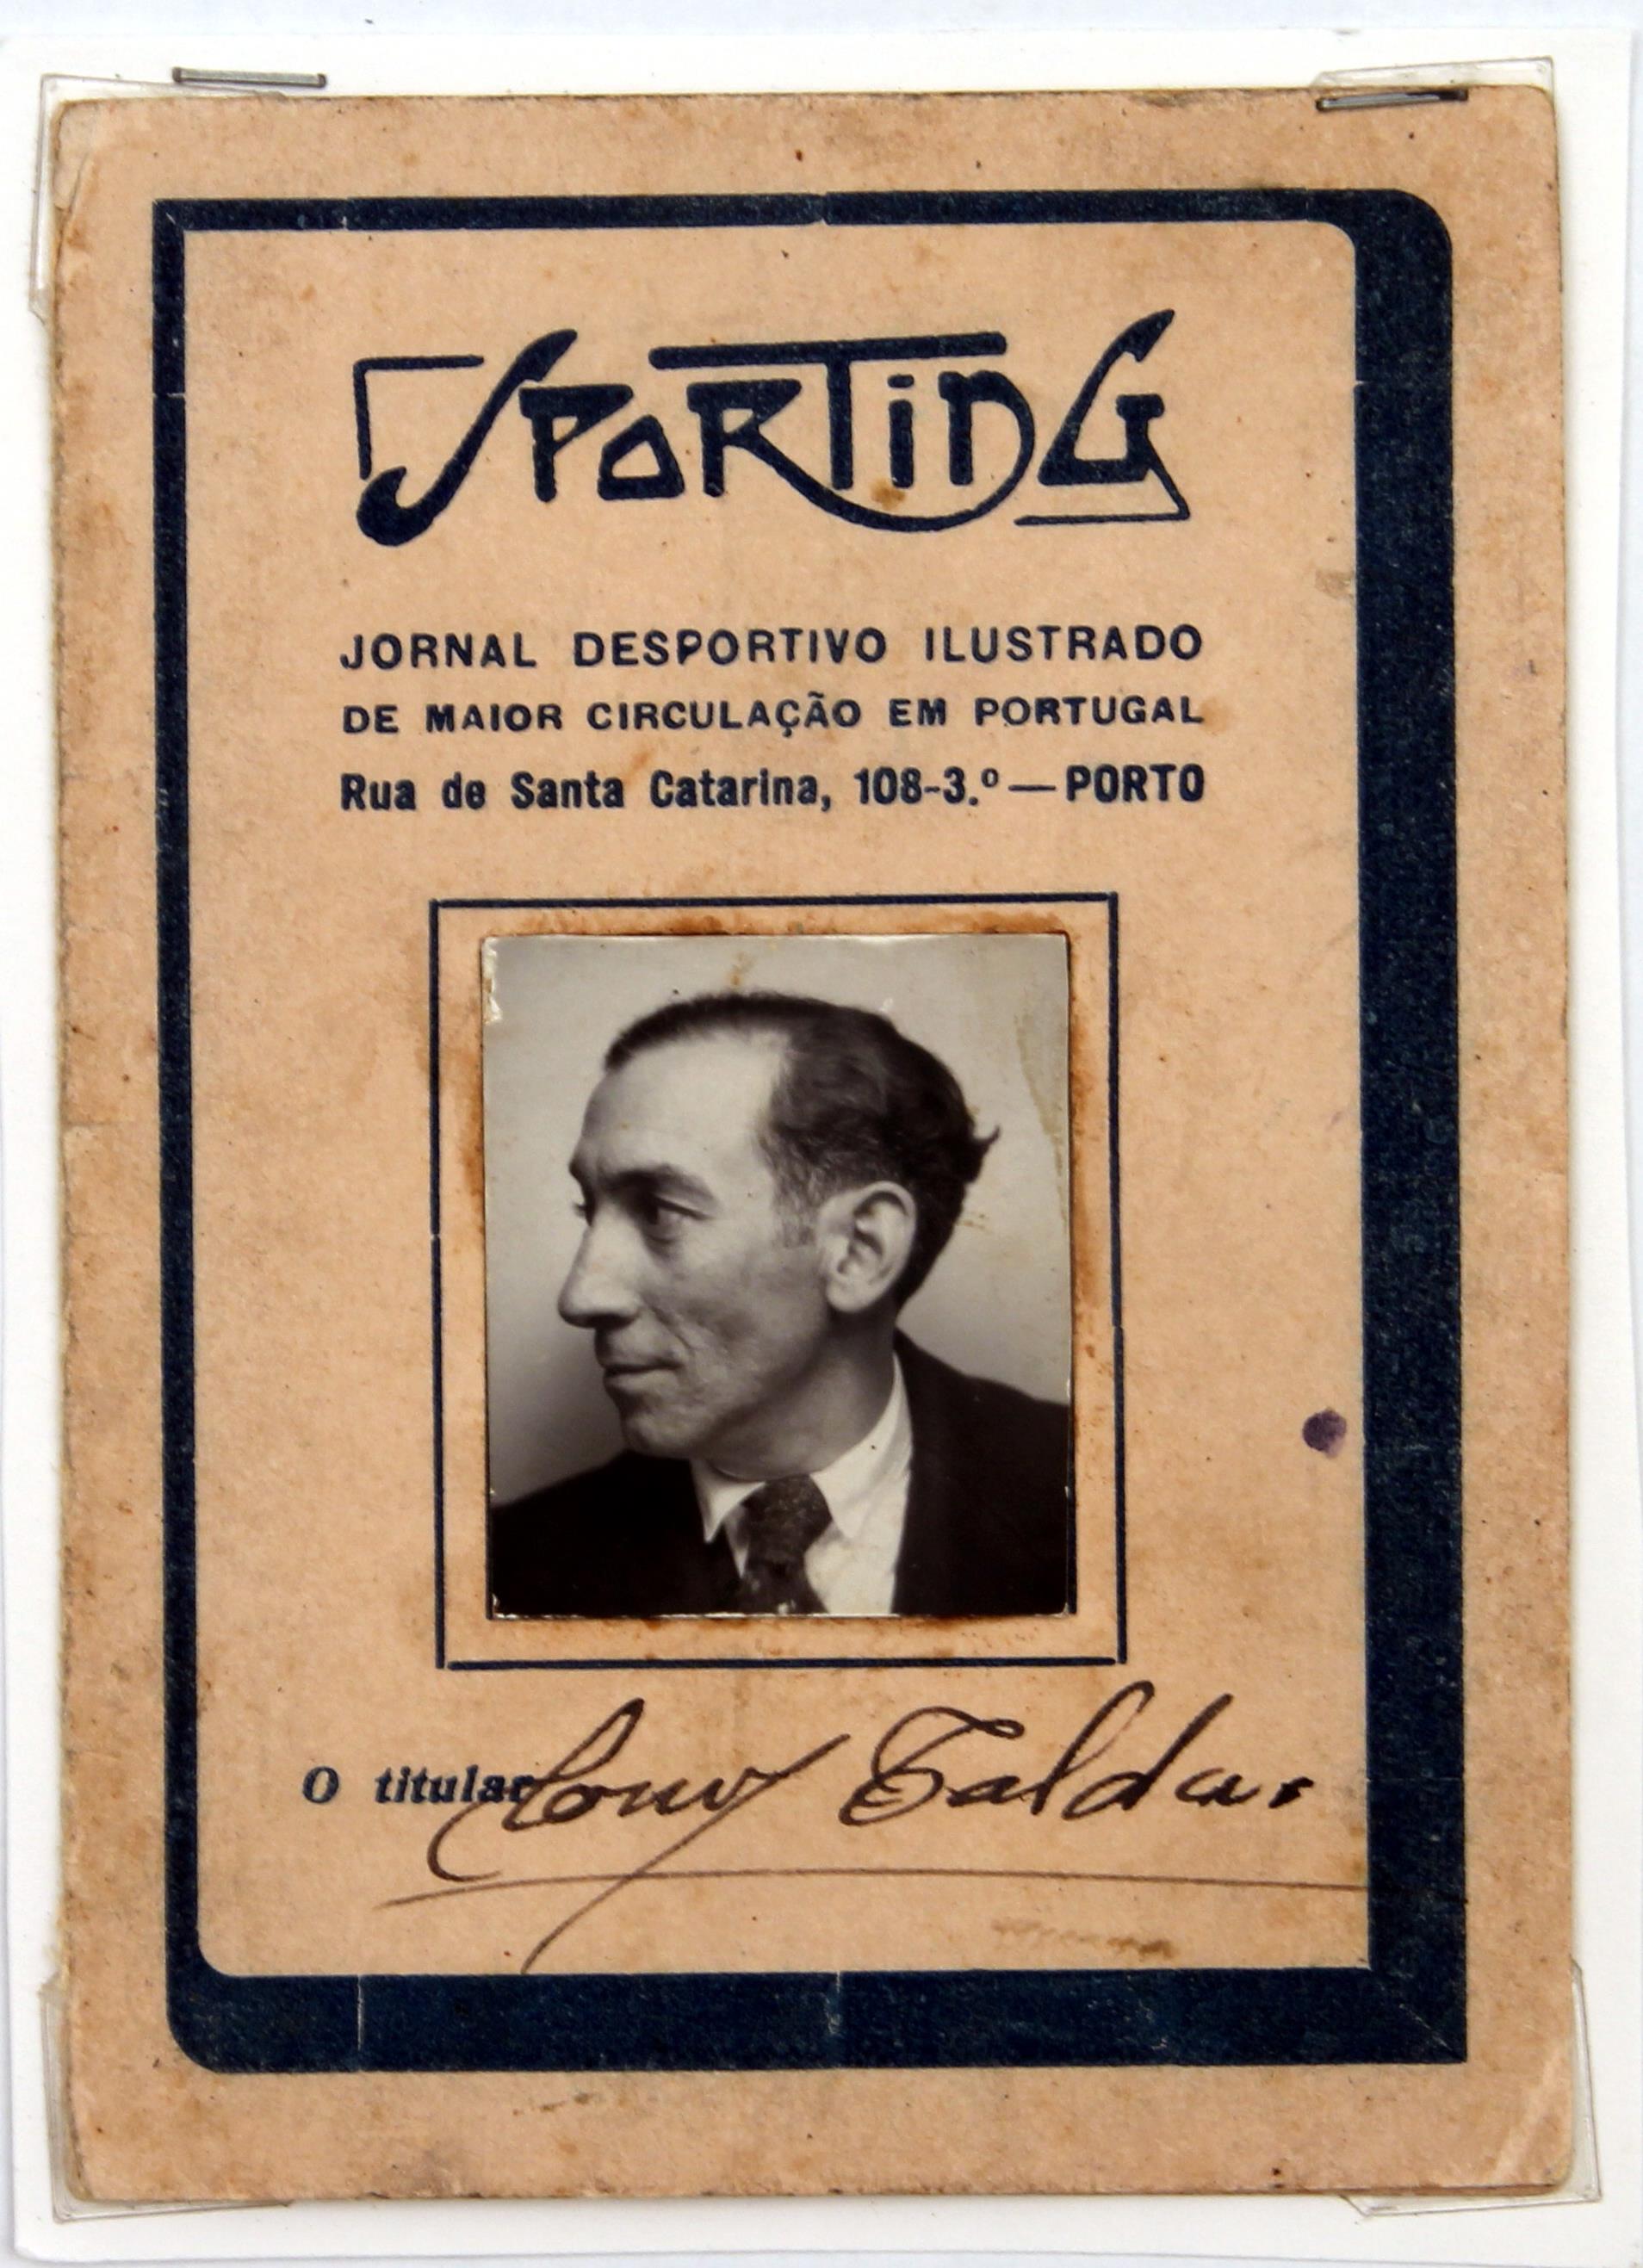 Cruz Caldas (1) : 1897-1928 : «Sporting» : cartão de identidade : diretor artístico